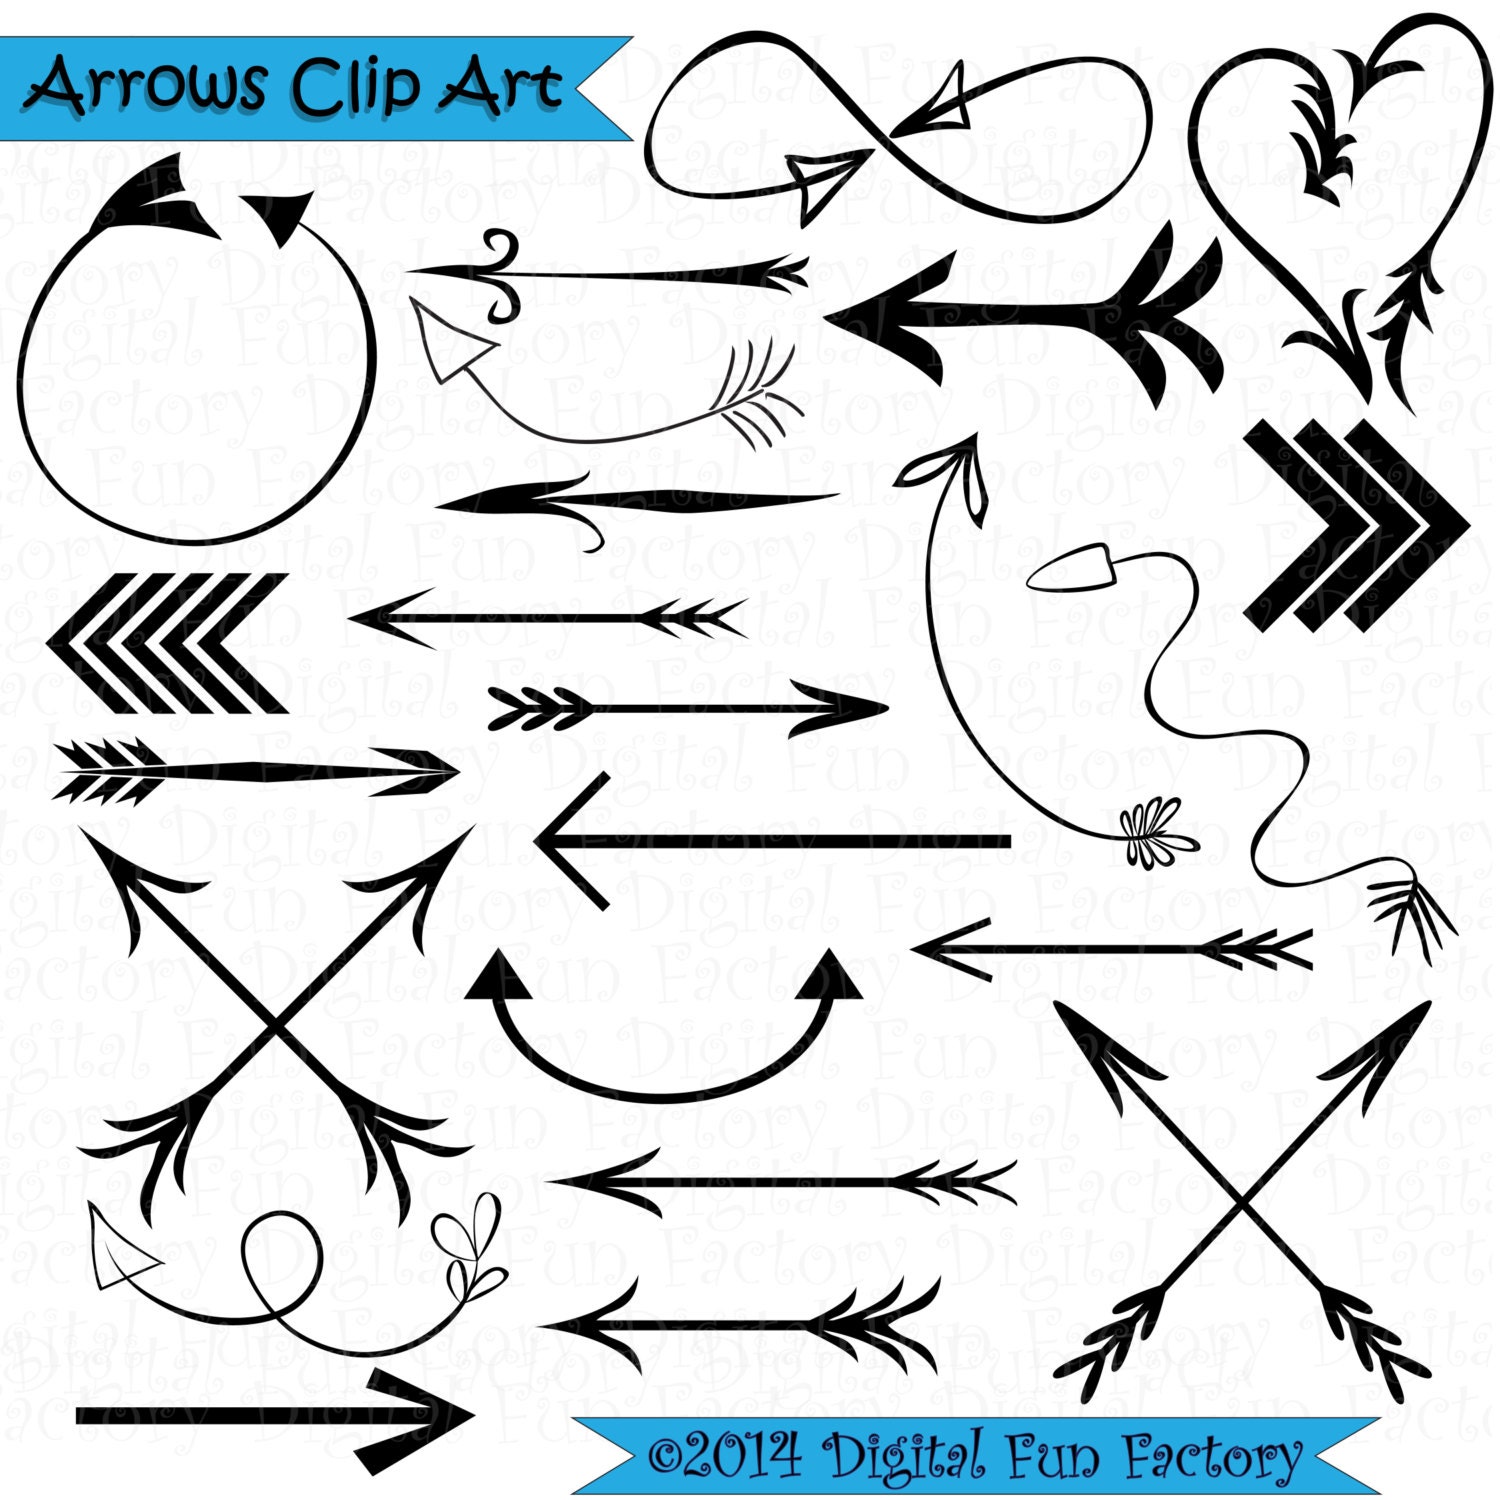 Arrows Clip Art: Doodle Arrows Clip Art Arrow